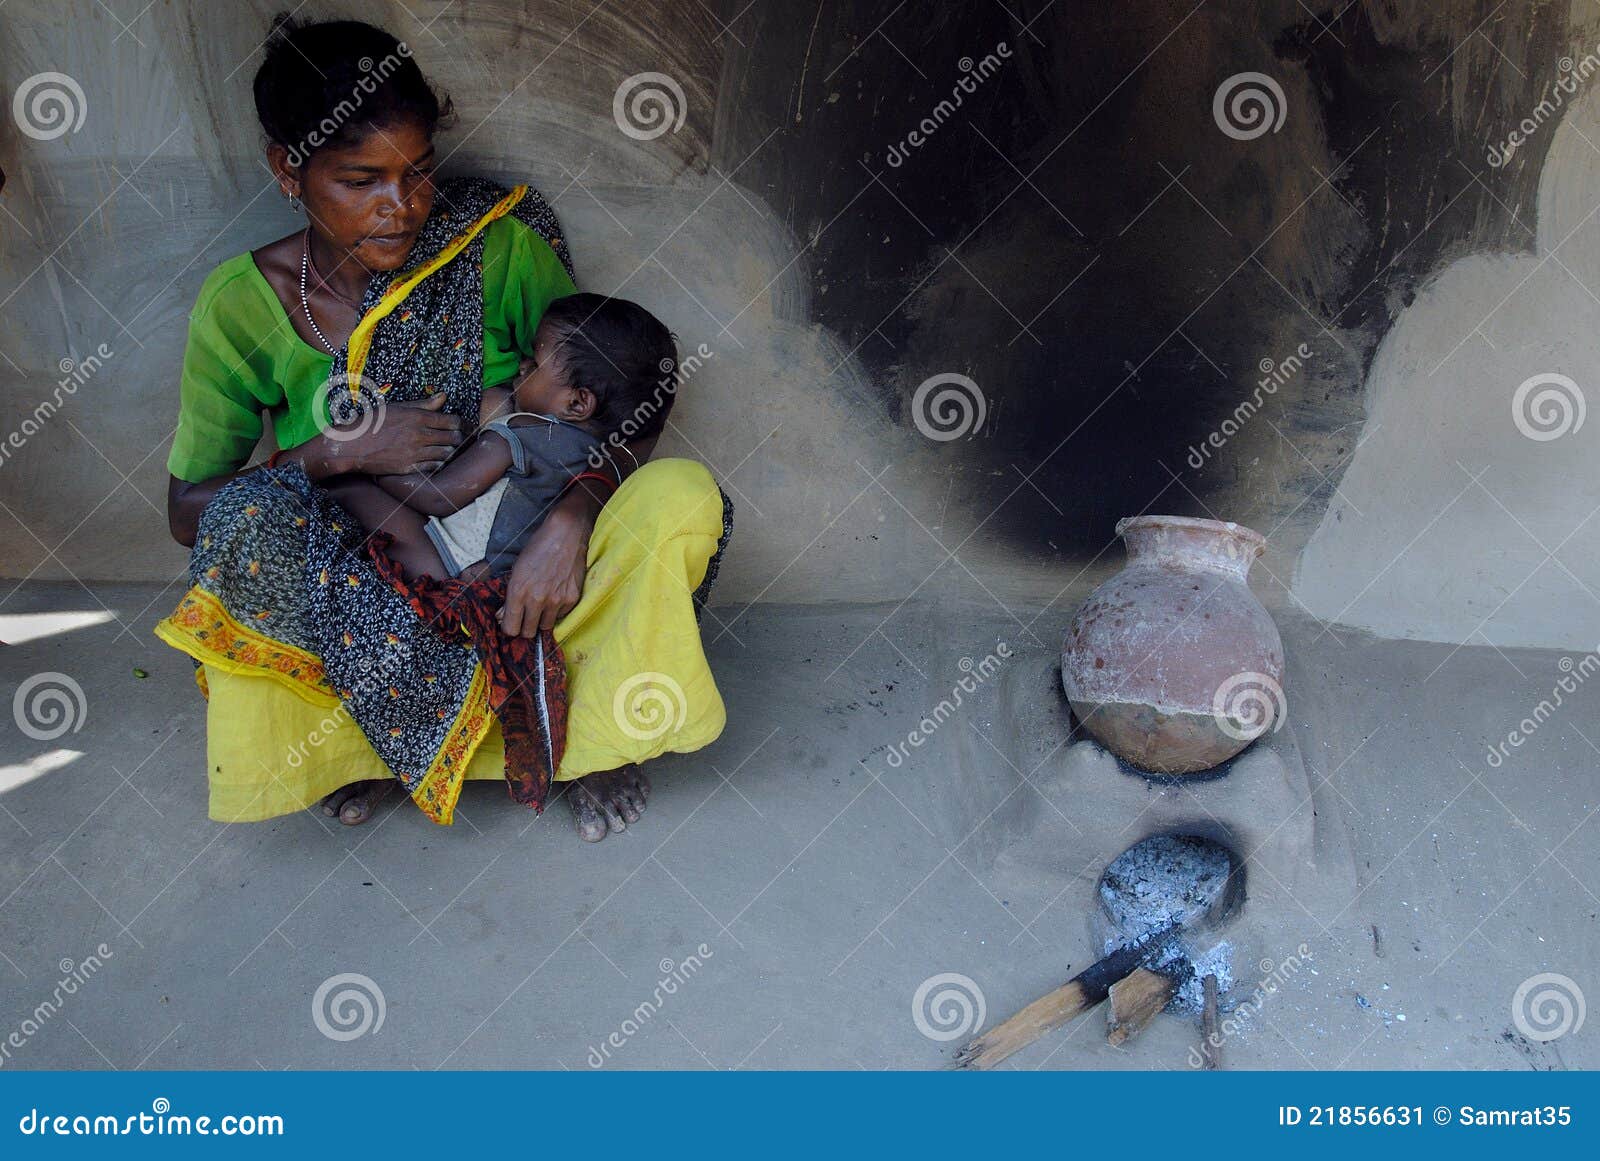 Indian Slum Porn - Indian slum women breastfeeding | Babe | XXX videos